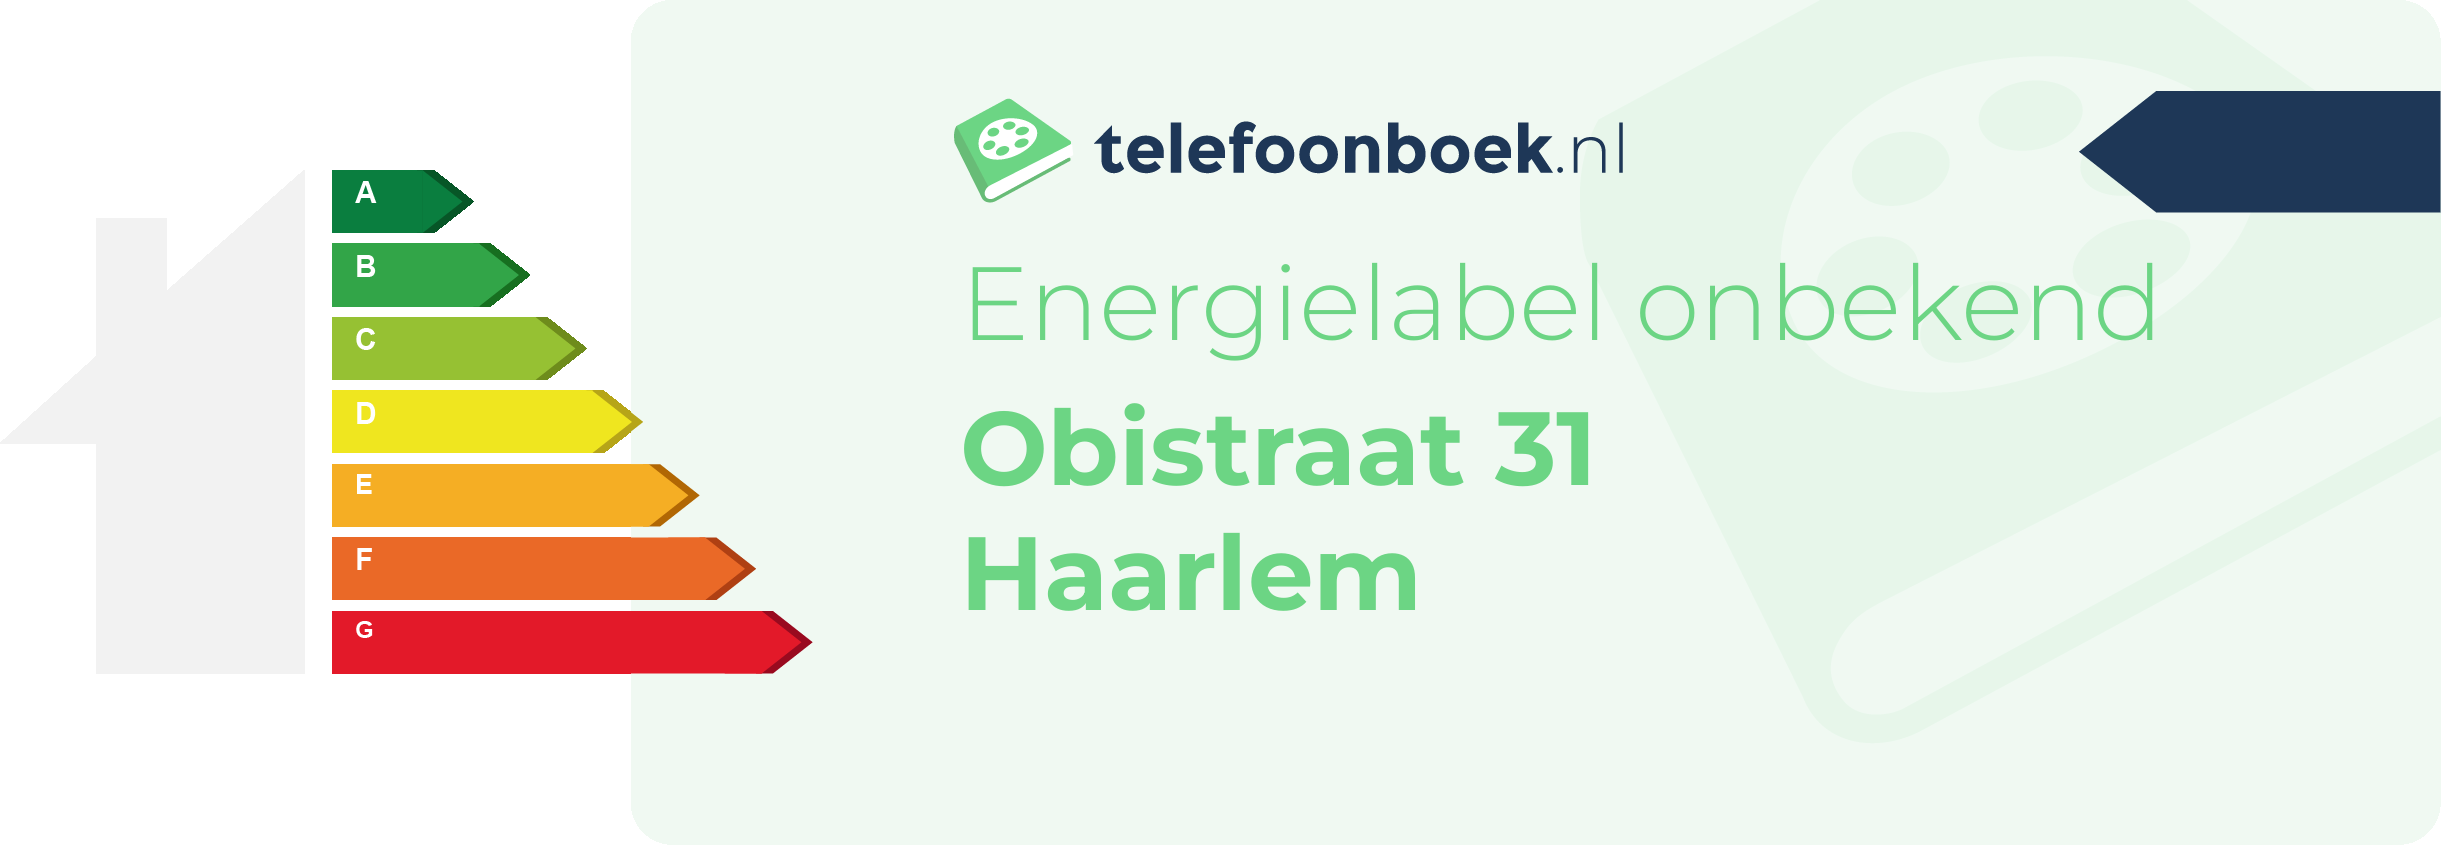 Energielabel Obistraat 31 Haarlem